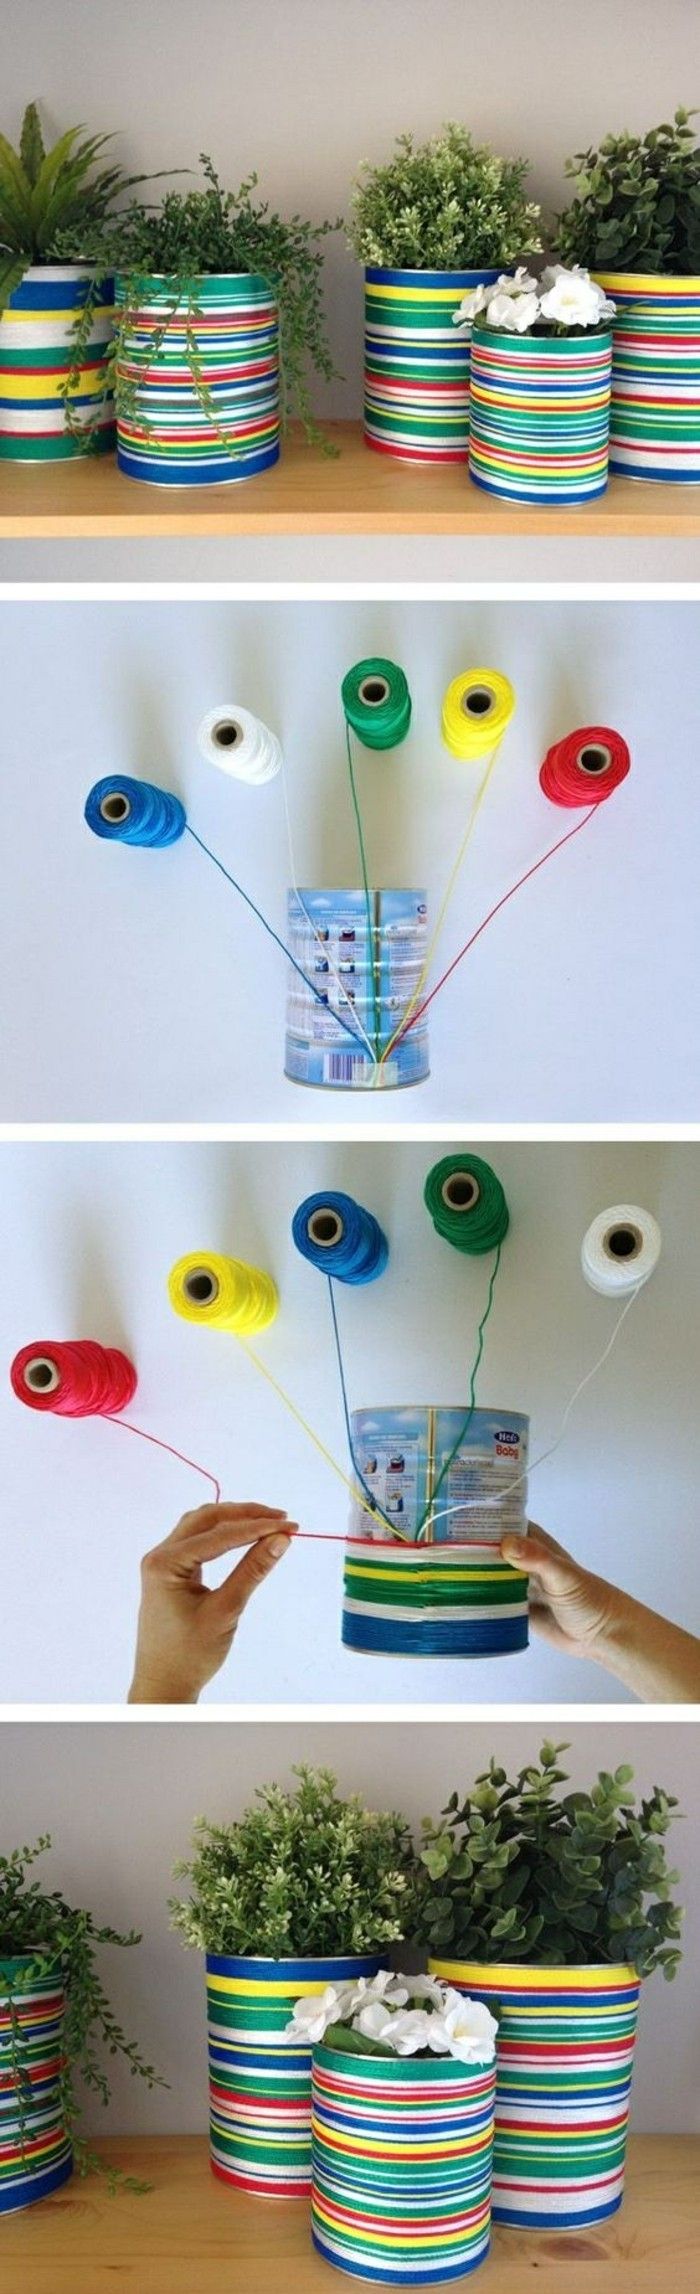 creative artigianali-idee-Pots-off lattine-thread-in-differenti-colori